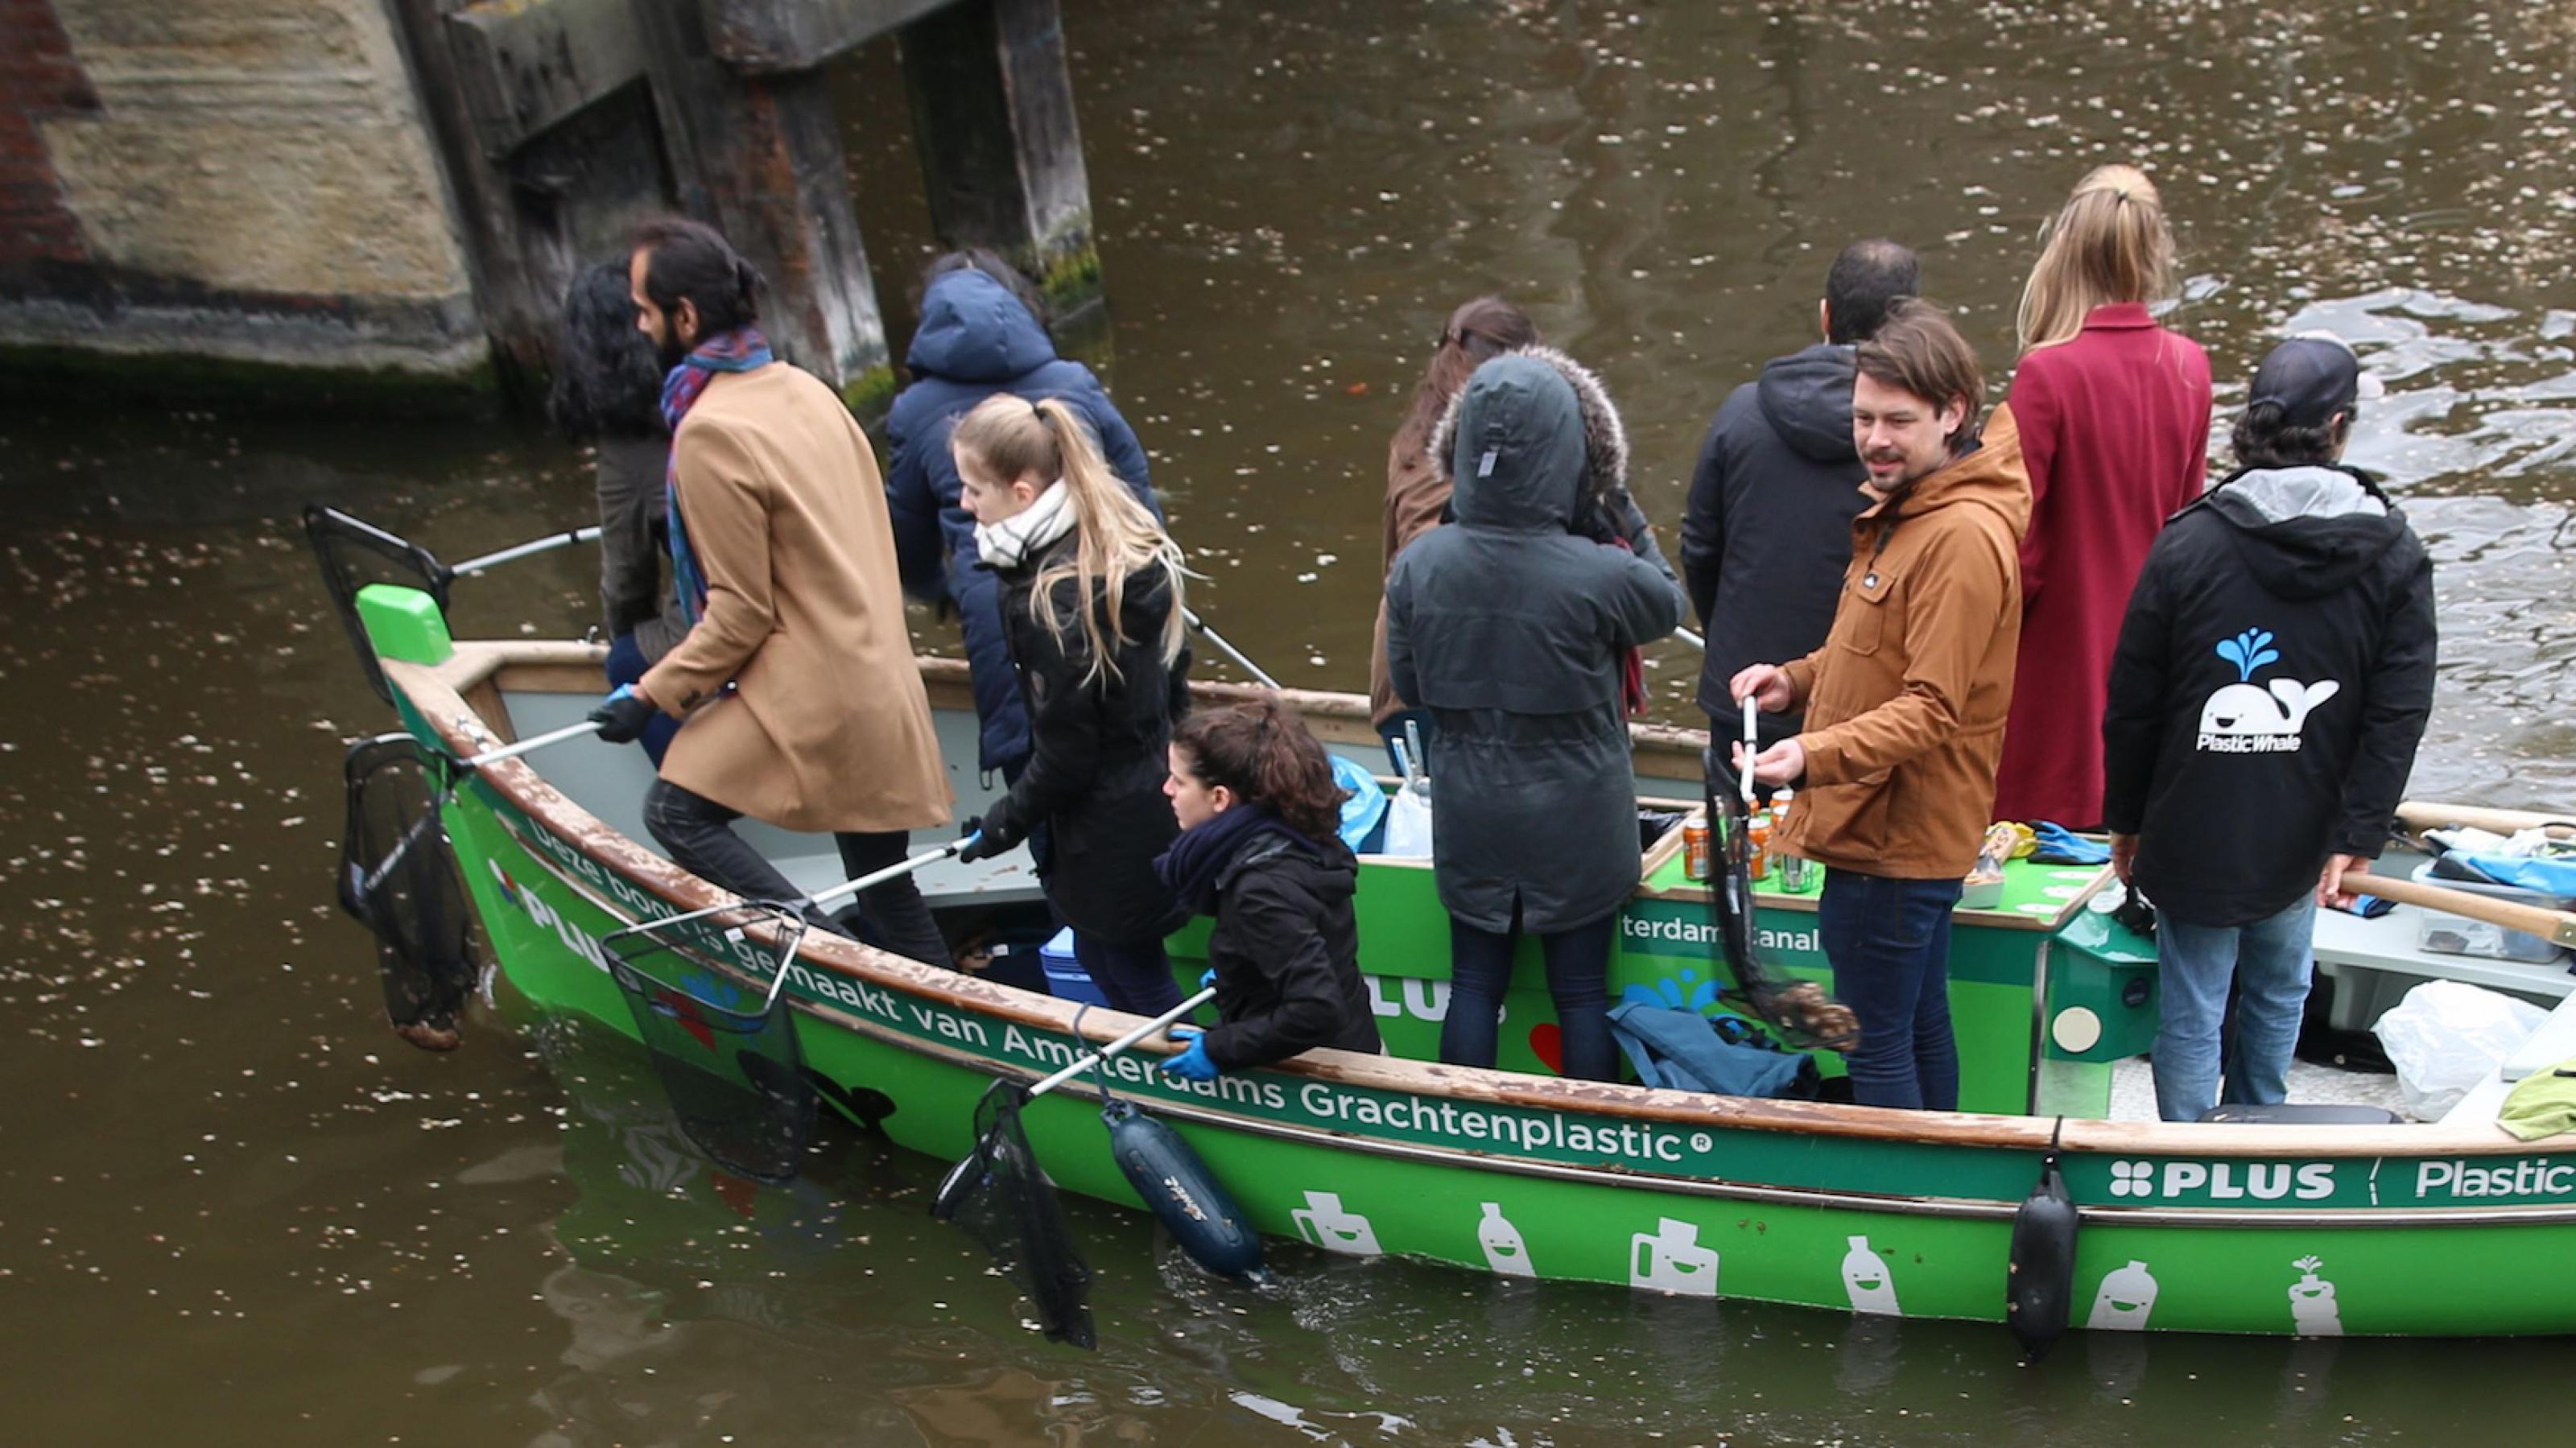 Ein grünes Boot auf einer Gracht in Amsterdam, darin stehen und sitzen elf junge Leute. Sie haben Käscher in der Hand. Die Aufschrift des Bootes besagt, dass die Mitfahrer Plastikmüll aus dem Wasser fischen. Jeder Fang wird laut bejubelt.